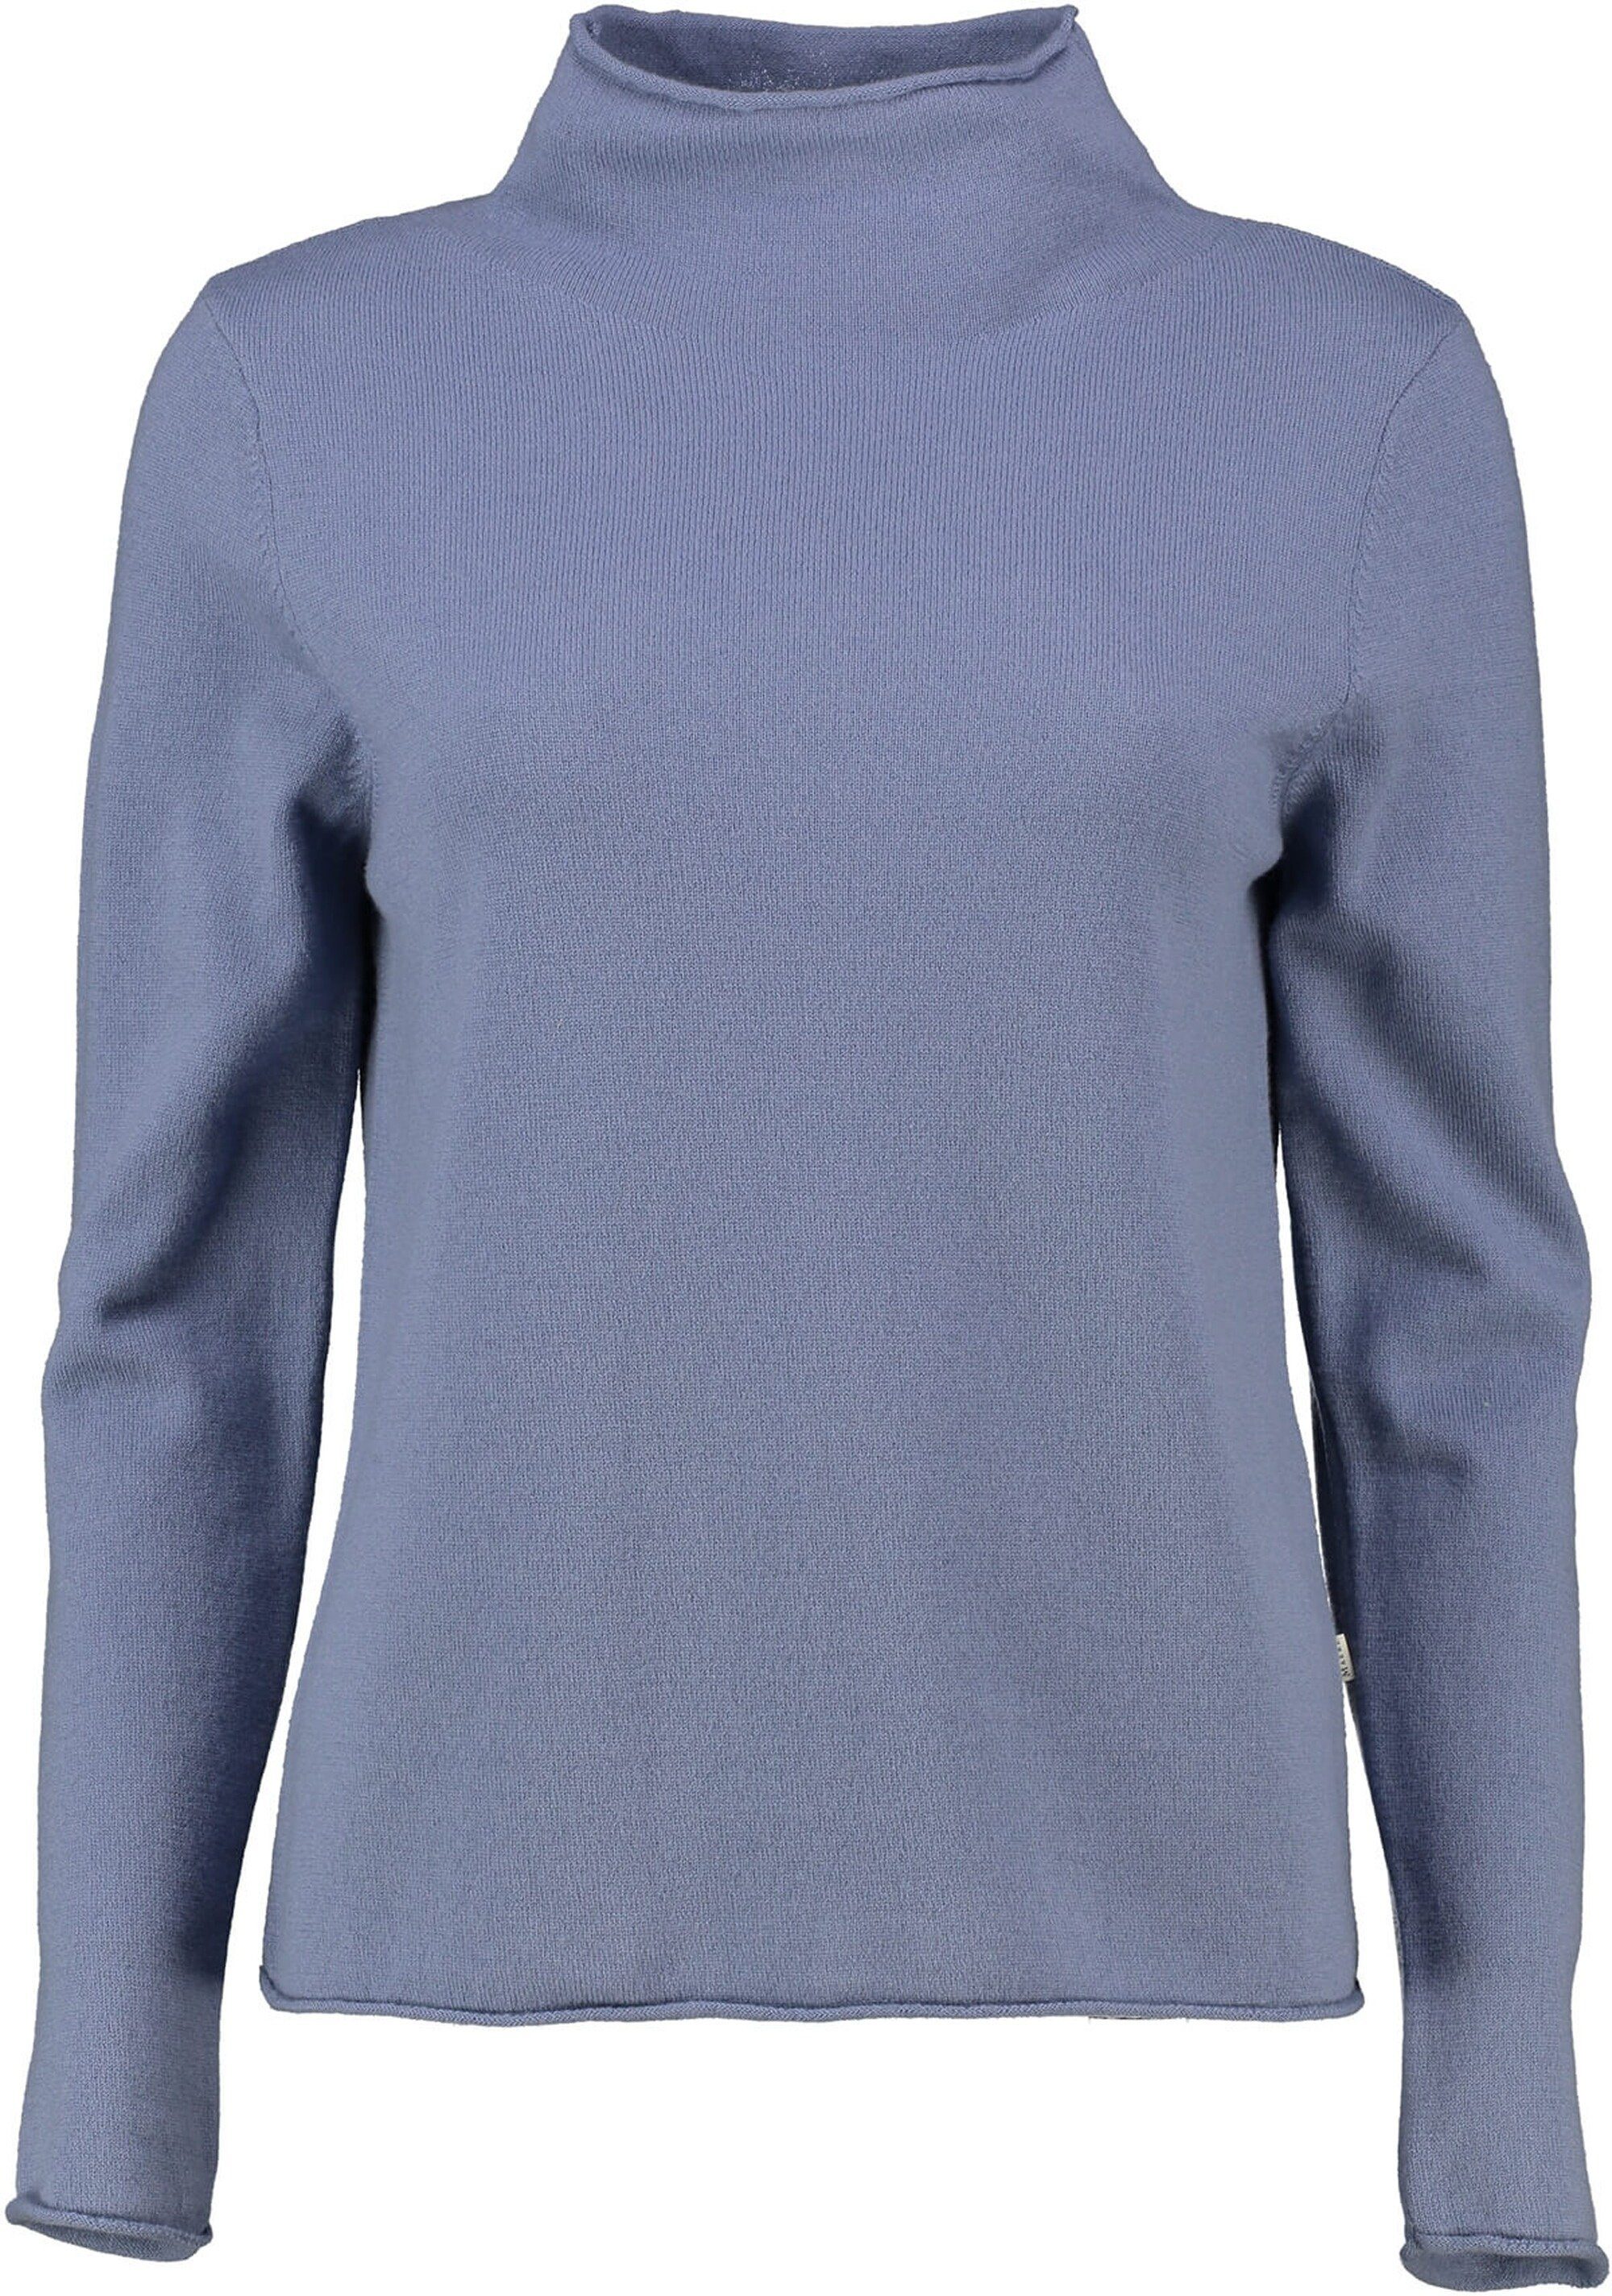 MAERZ Muenchen Stehkragenpullover MAERZ Stehkragen-Pullover blau aus hochwertiger Merinowolle | Stehkragenpullover